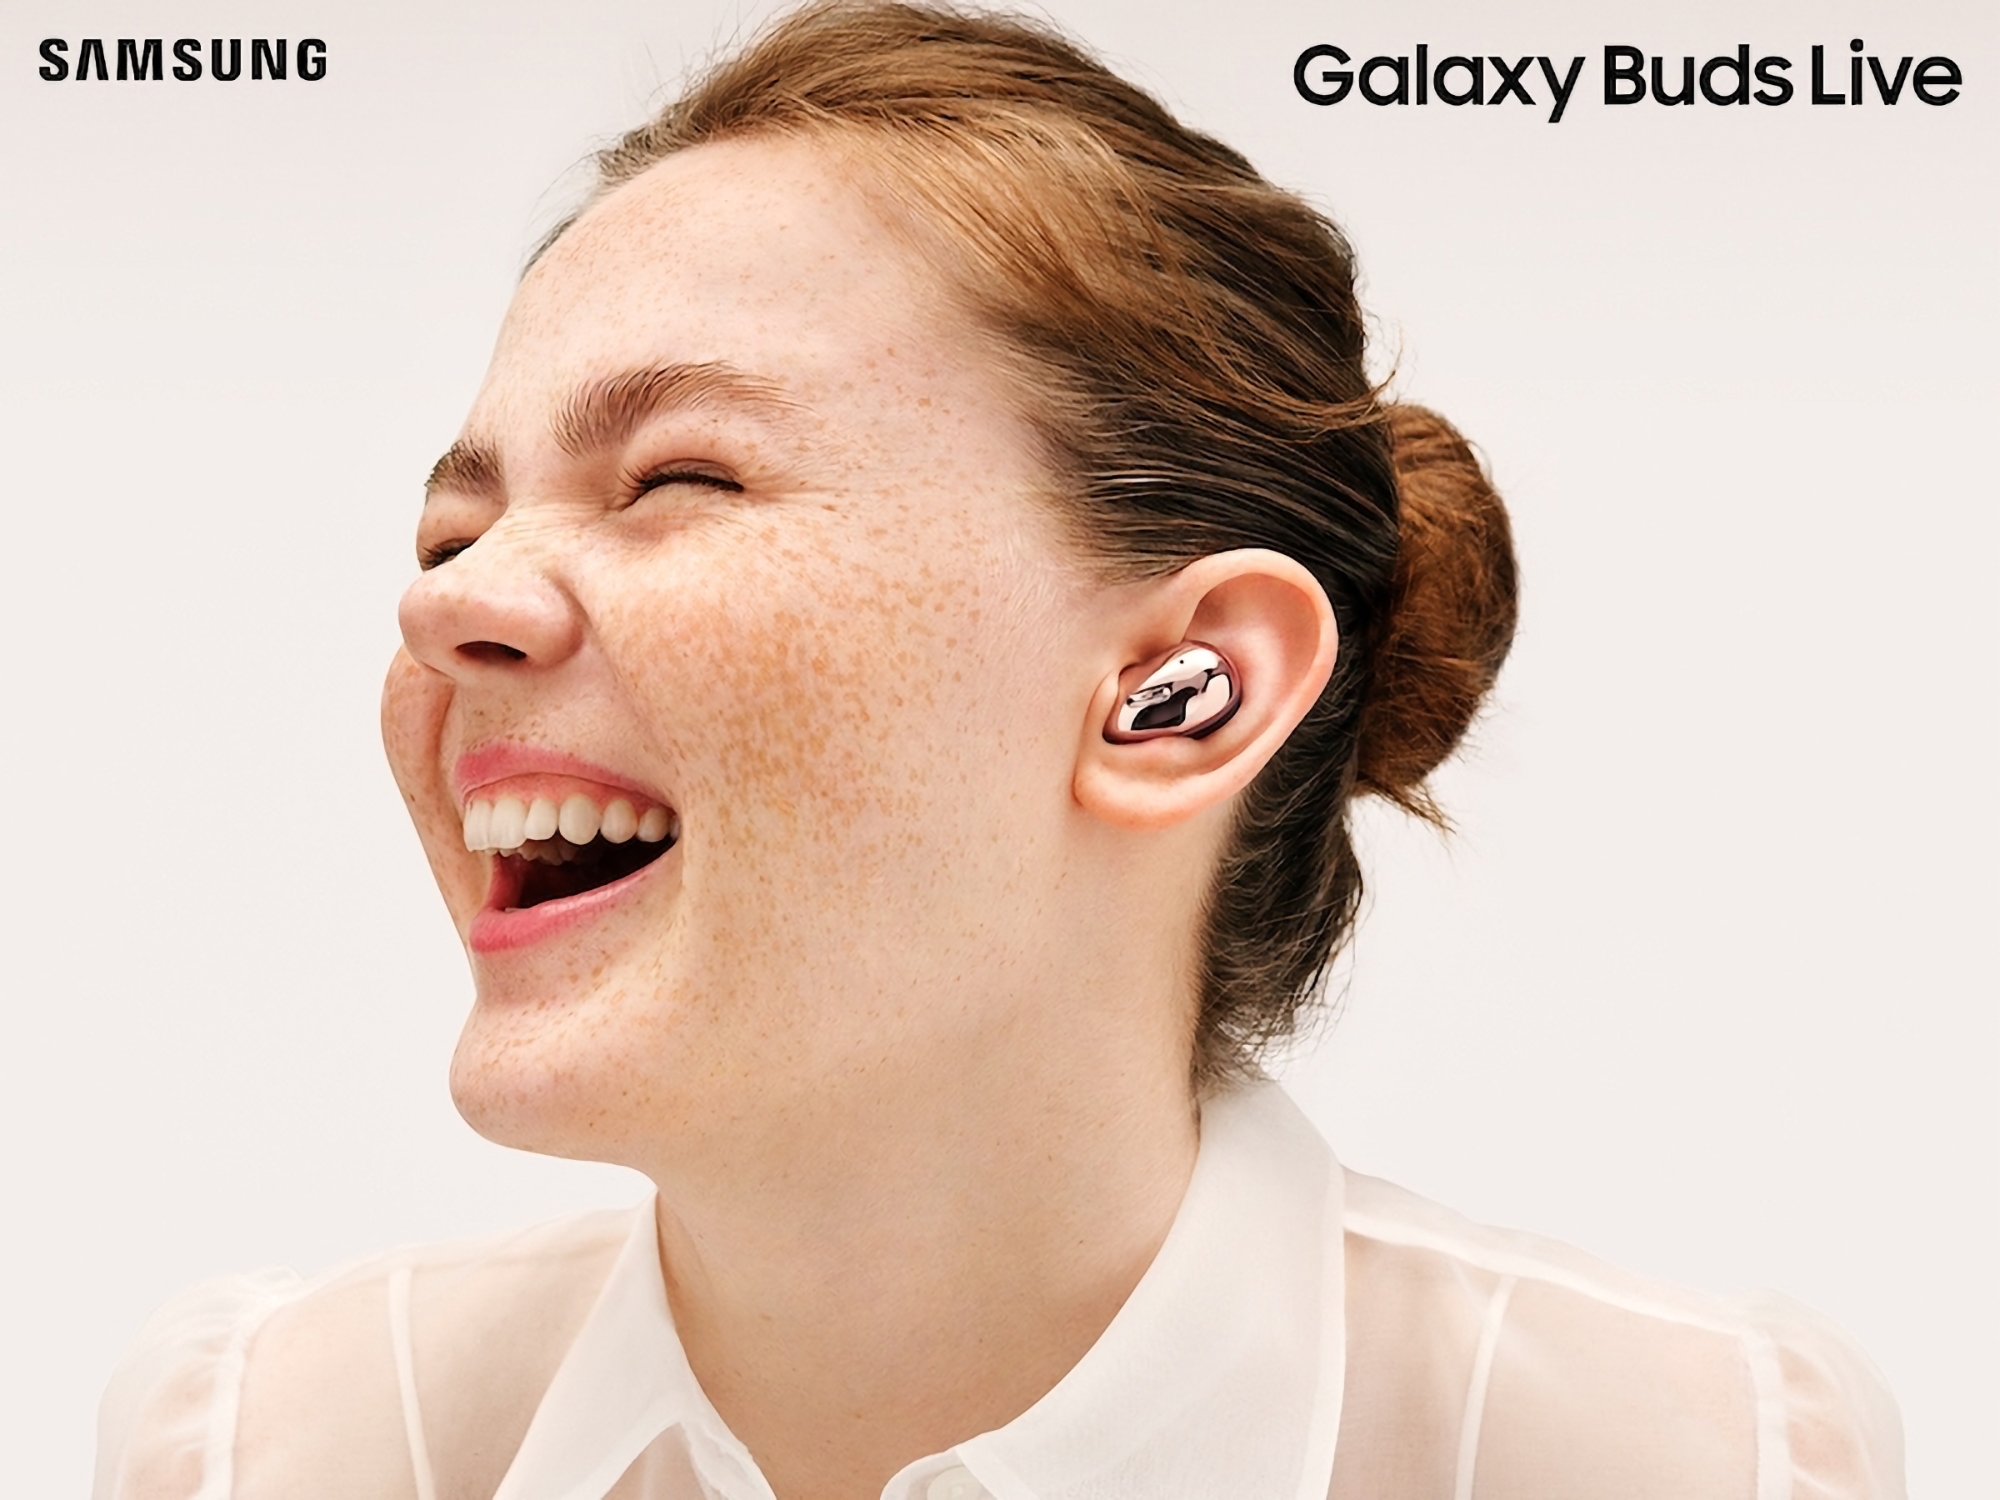 Rumeur : Samsung n'a pas l'intention de sortir un successeur aux Galaxy Buds Live